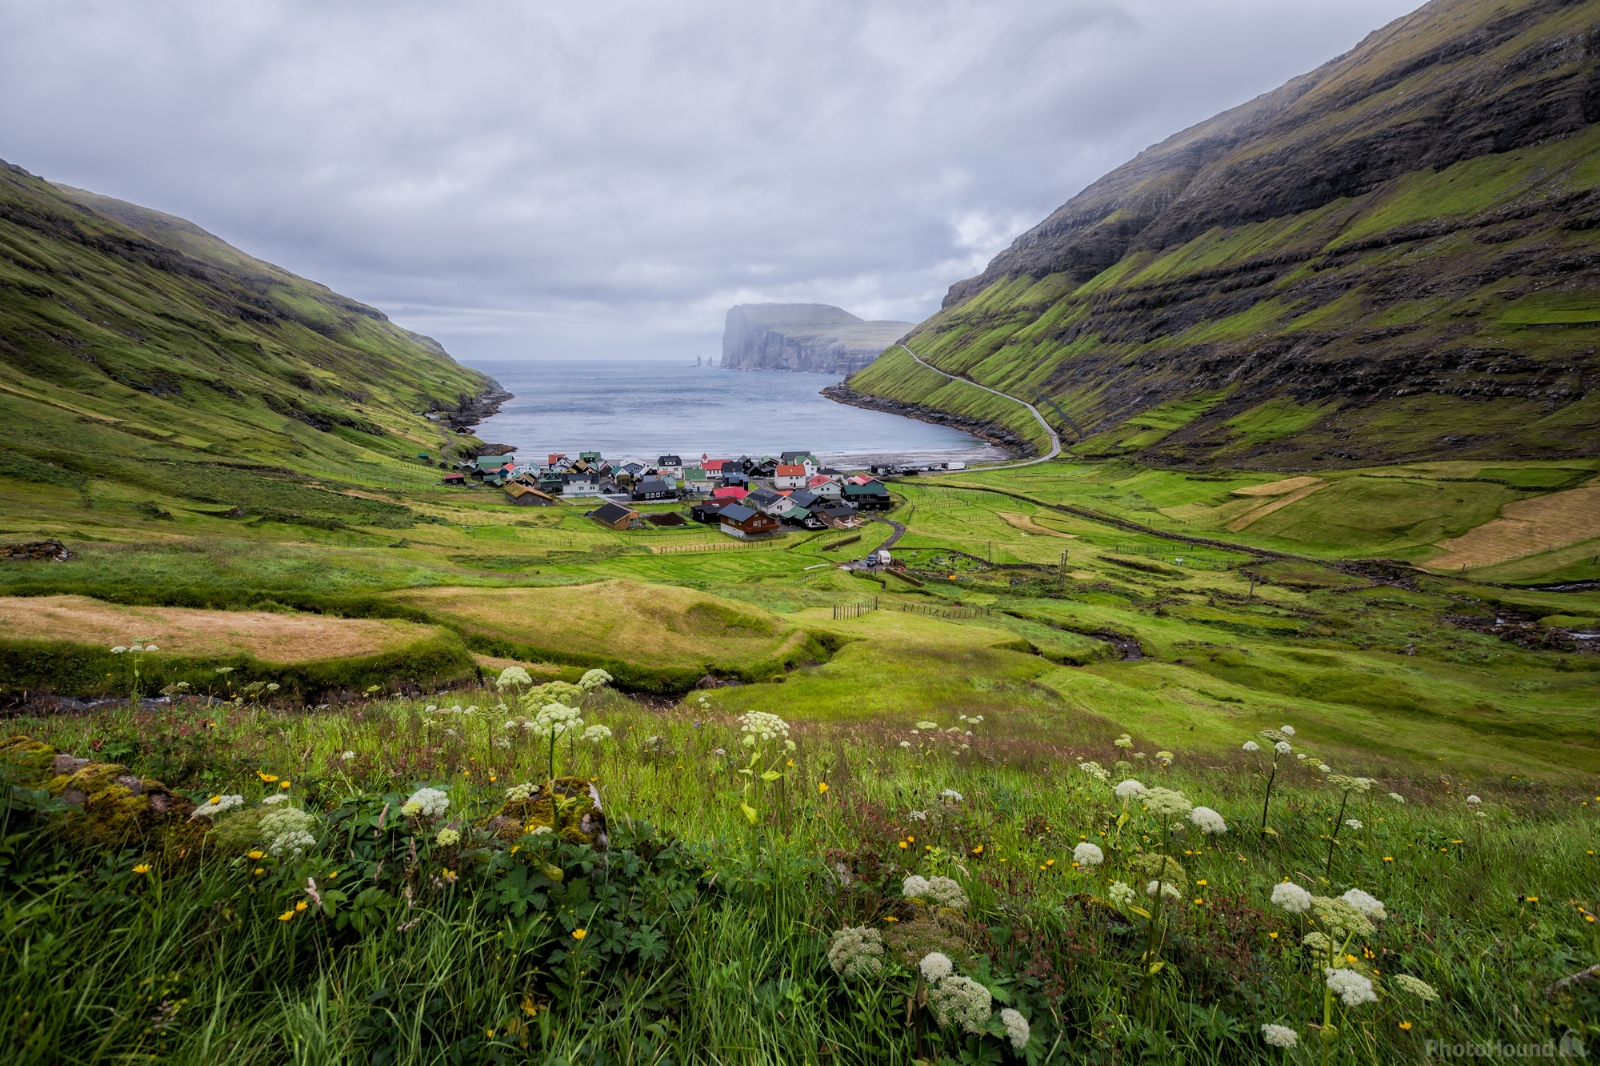 Image of Tjørnuvík village by Jaka Ivančič